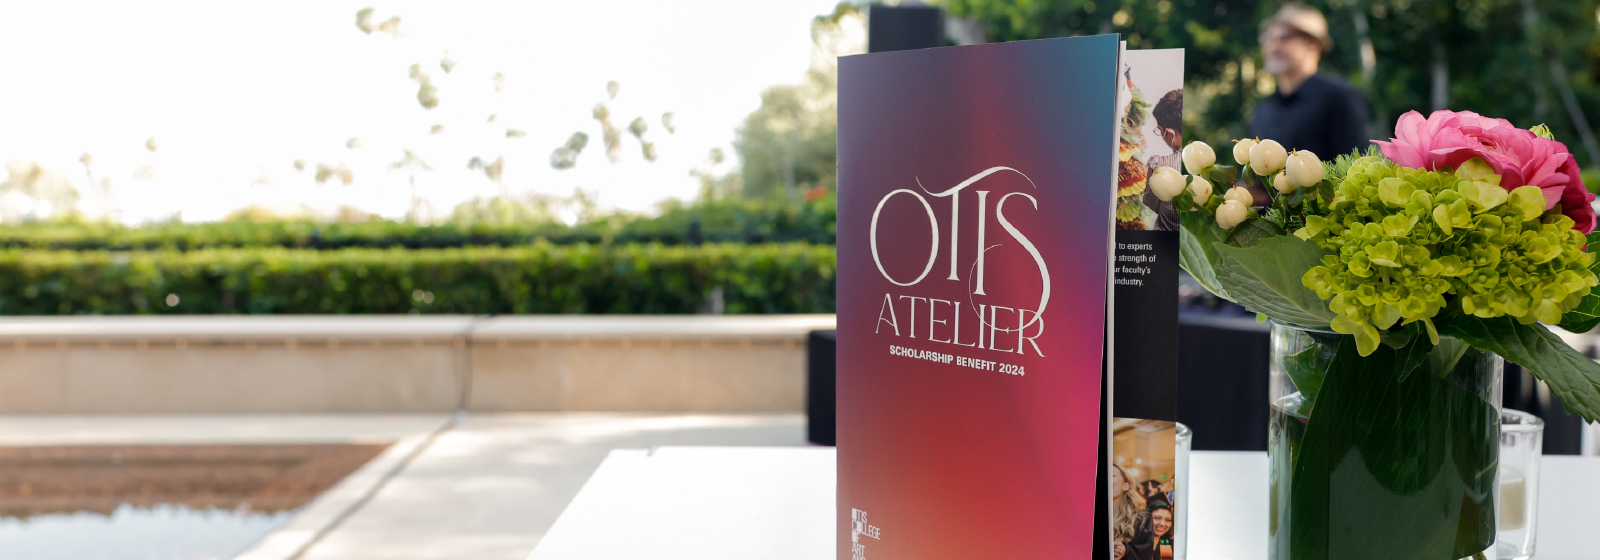 Otis Atelier event program sitting on white table outside